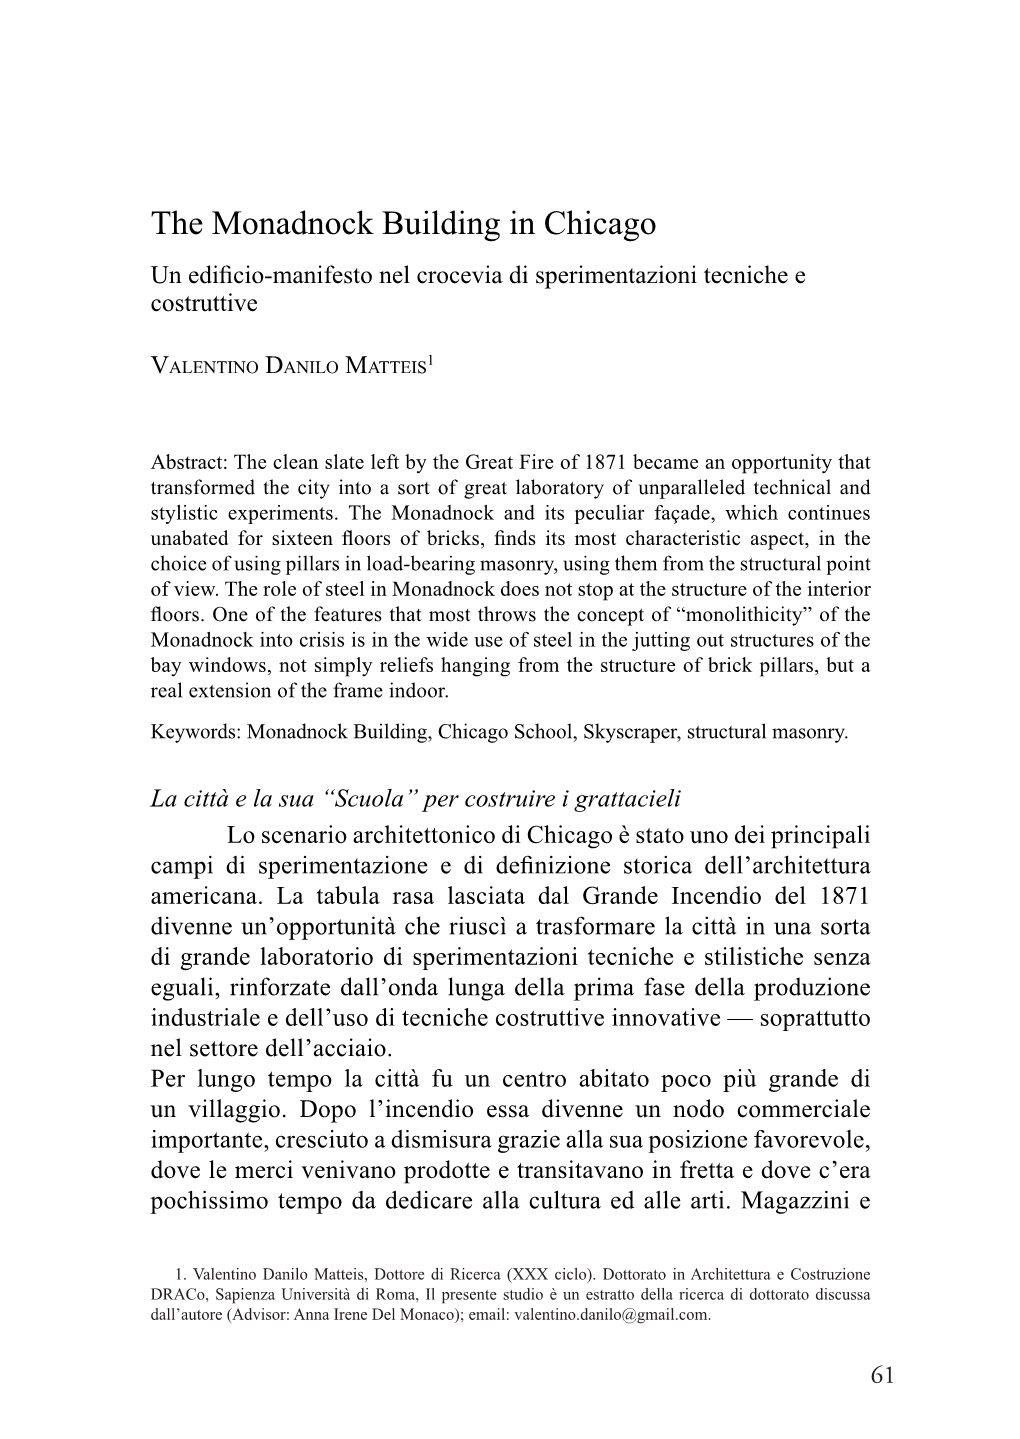 The Monadnock Building in Chicago Un Edificio-Manifesto Nel Crocevia Di Sperimentazioni Tecniche E Costruttive